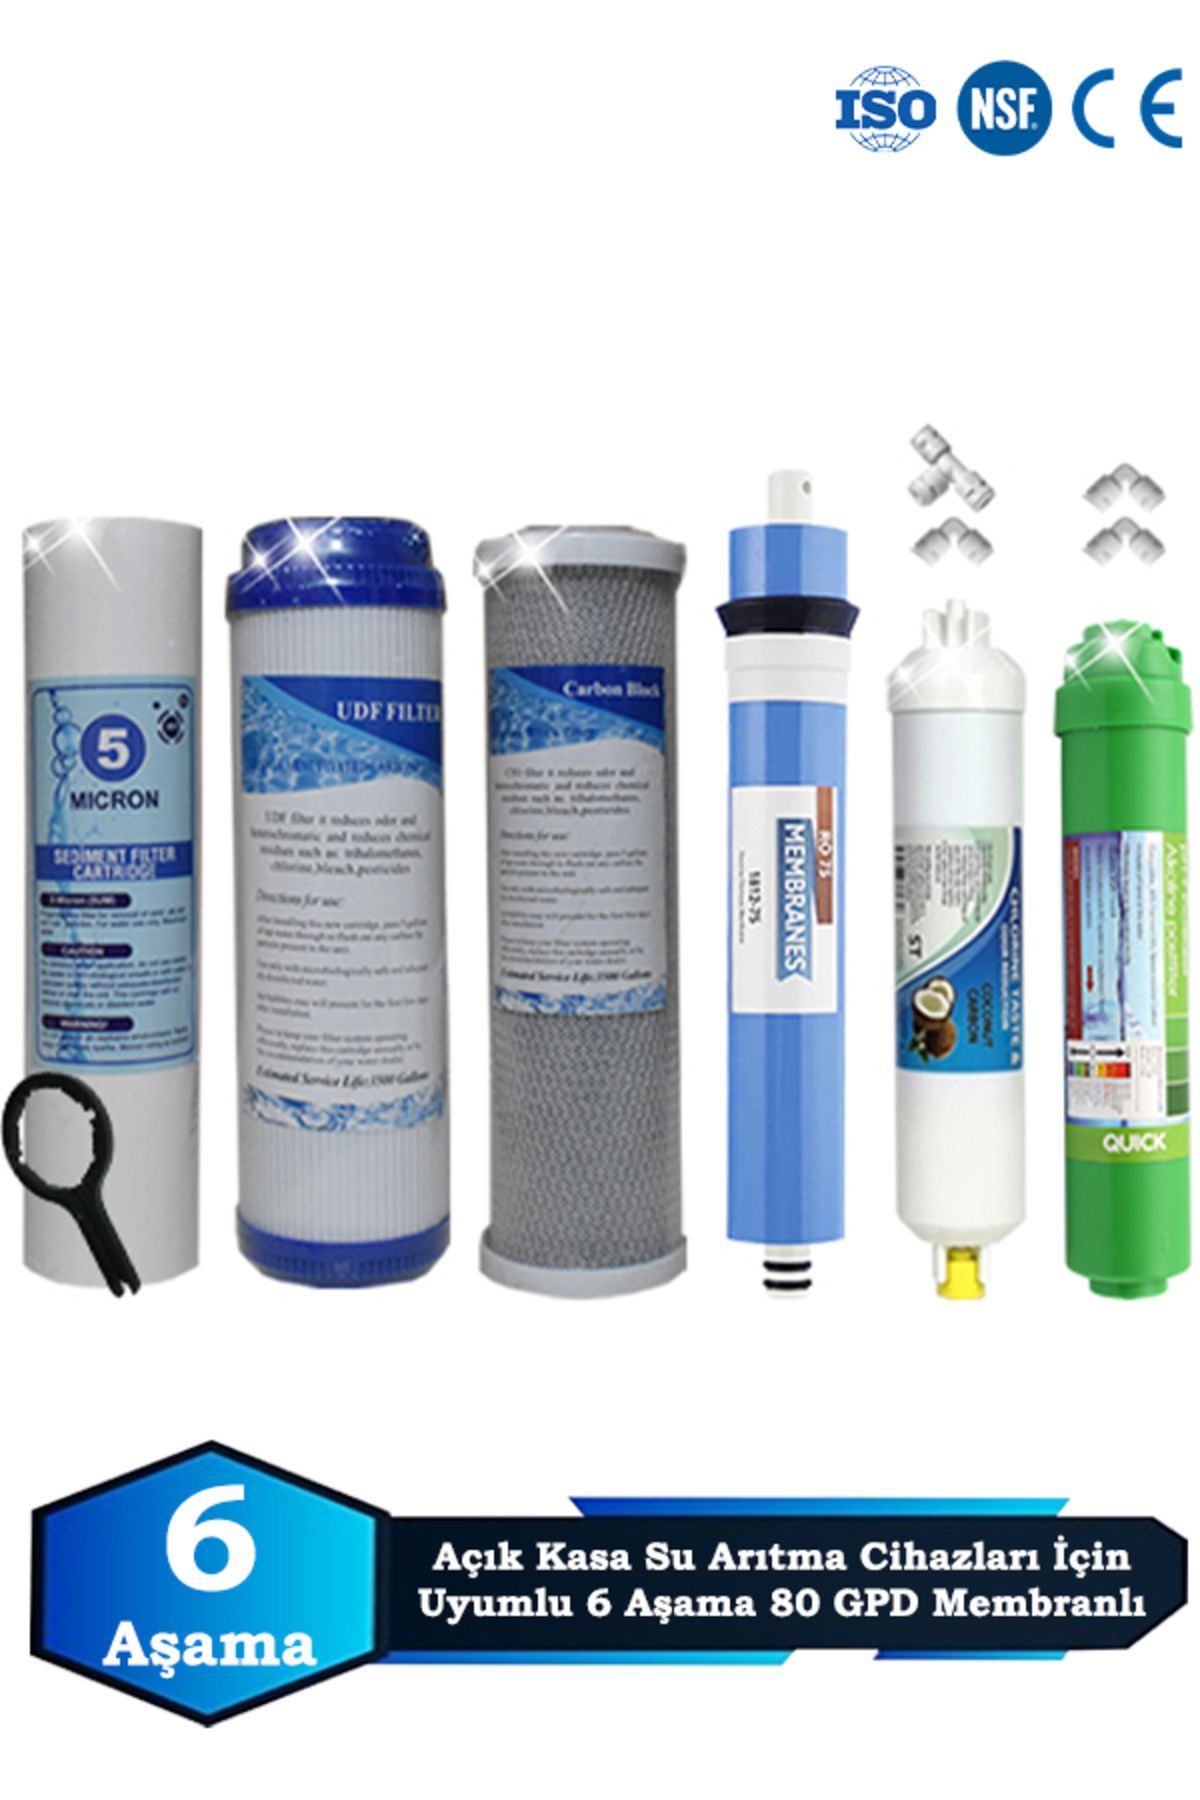 Sumarkt Açık Kasa Su Arıtma Cihazı Uyumlu 6 Aşama Cift Karbonlu 80 GPD Membranlı Alkalinli Filtre Bakım Seti